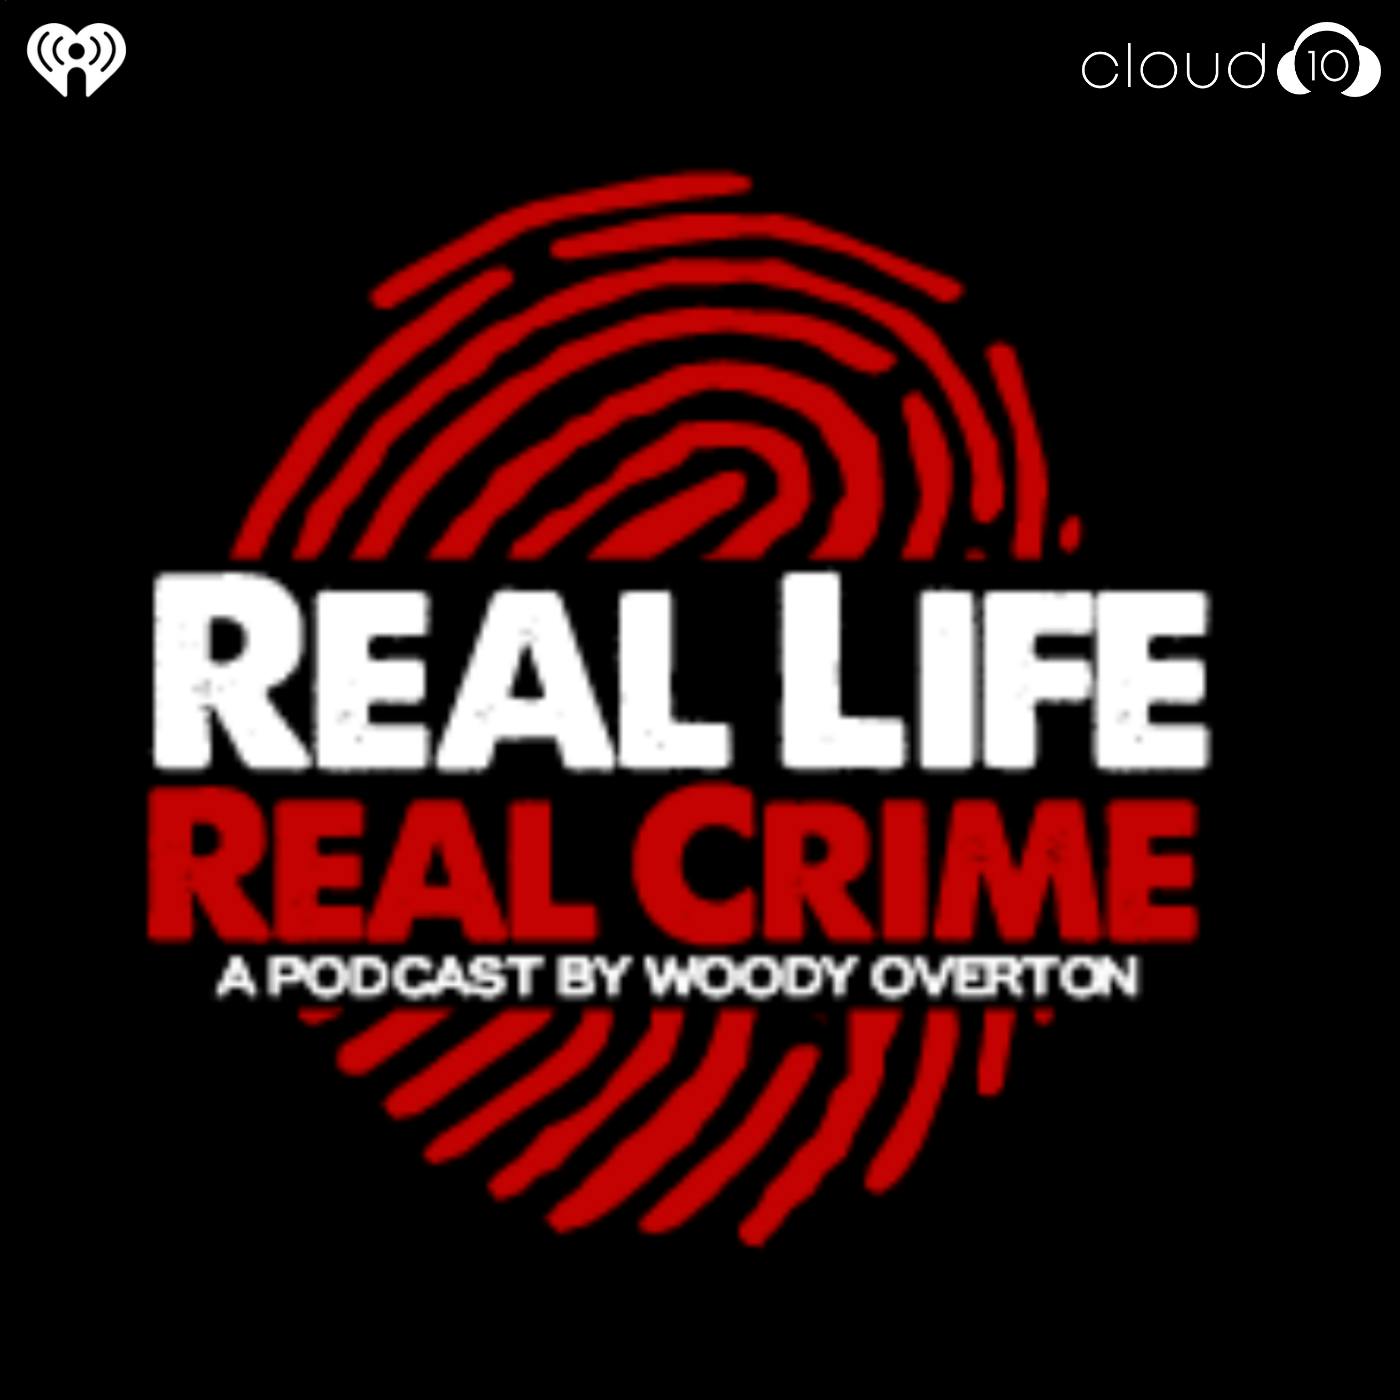 Real Life Real Crime